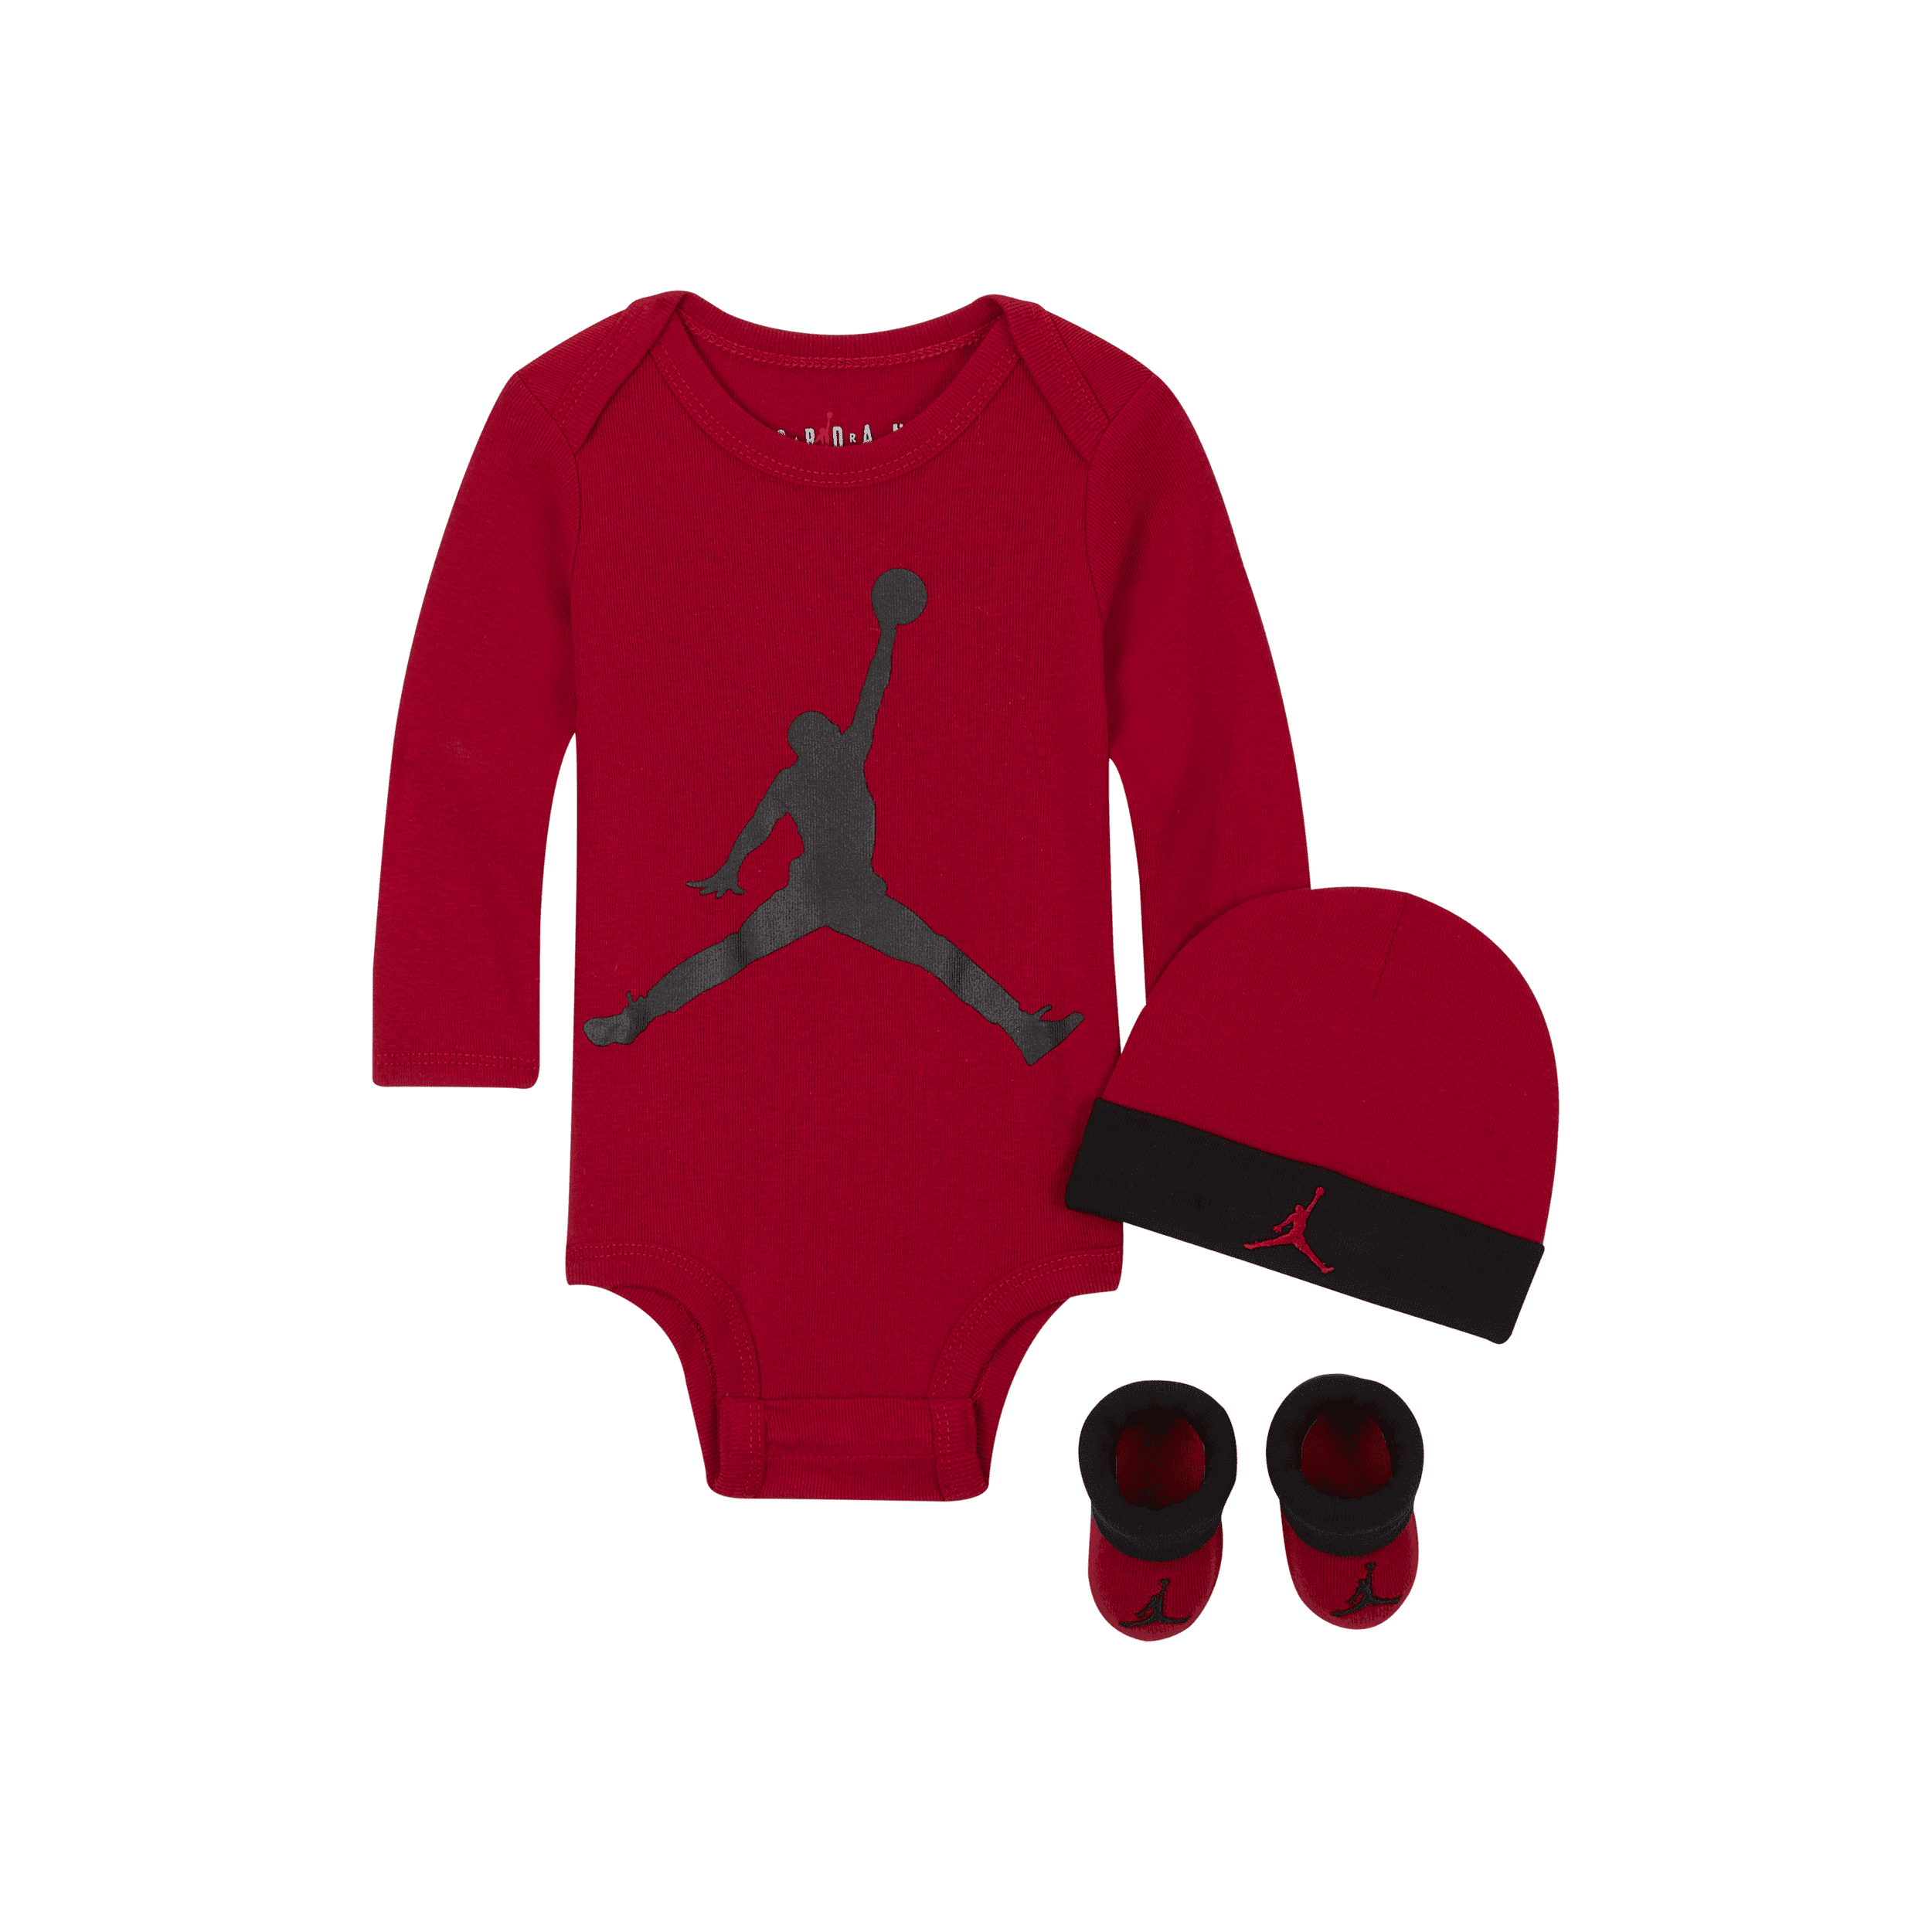 Jordan Driedelige babyset (0-12 maanden) - Rood